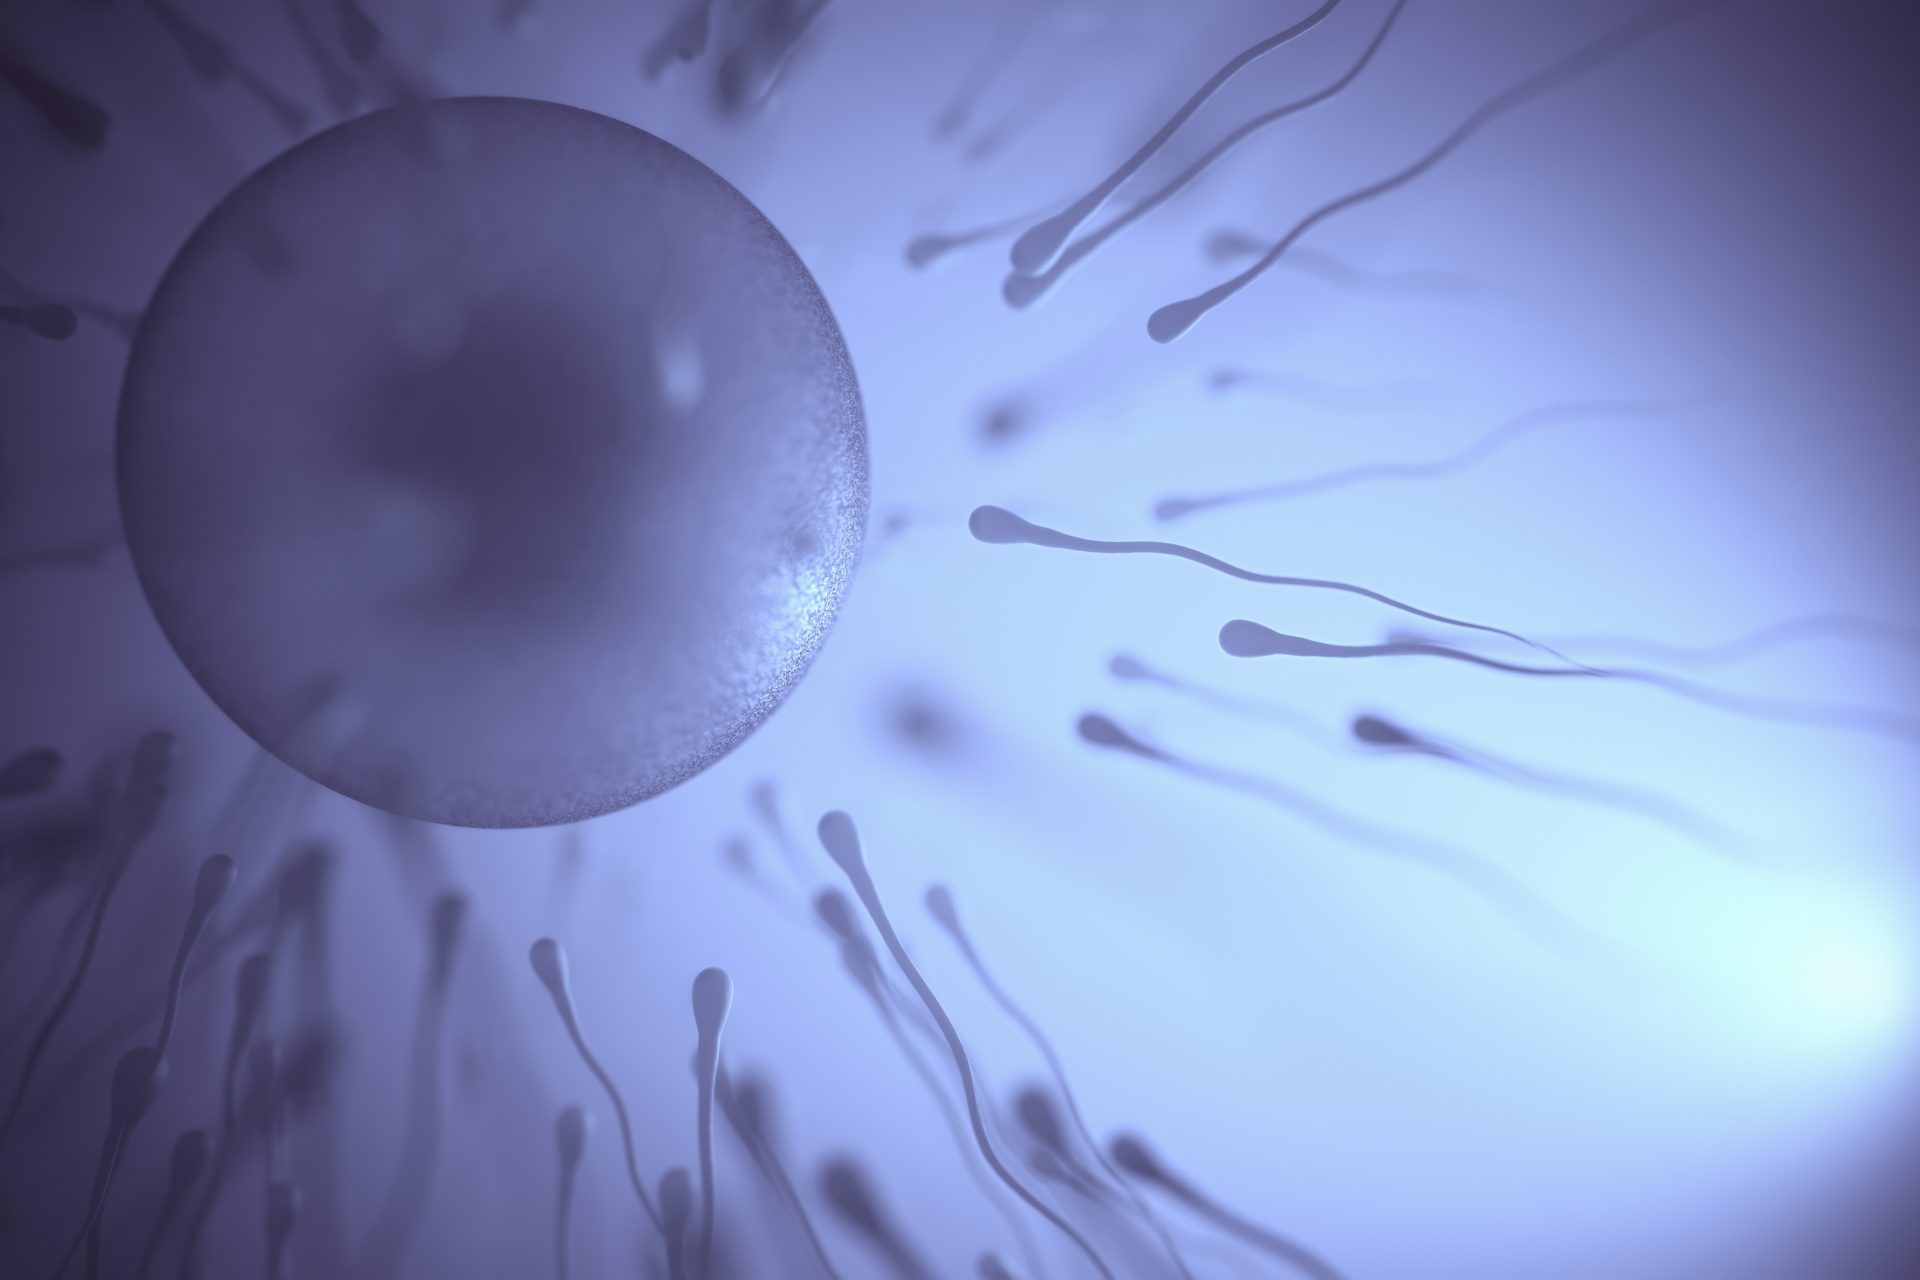 High temperatures reduce sperm